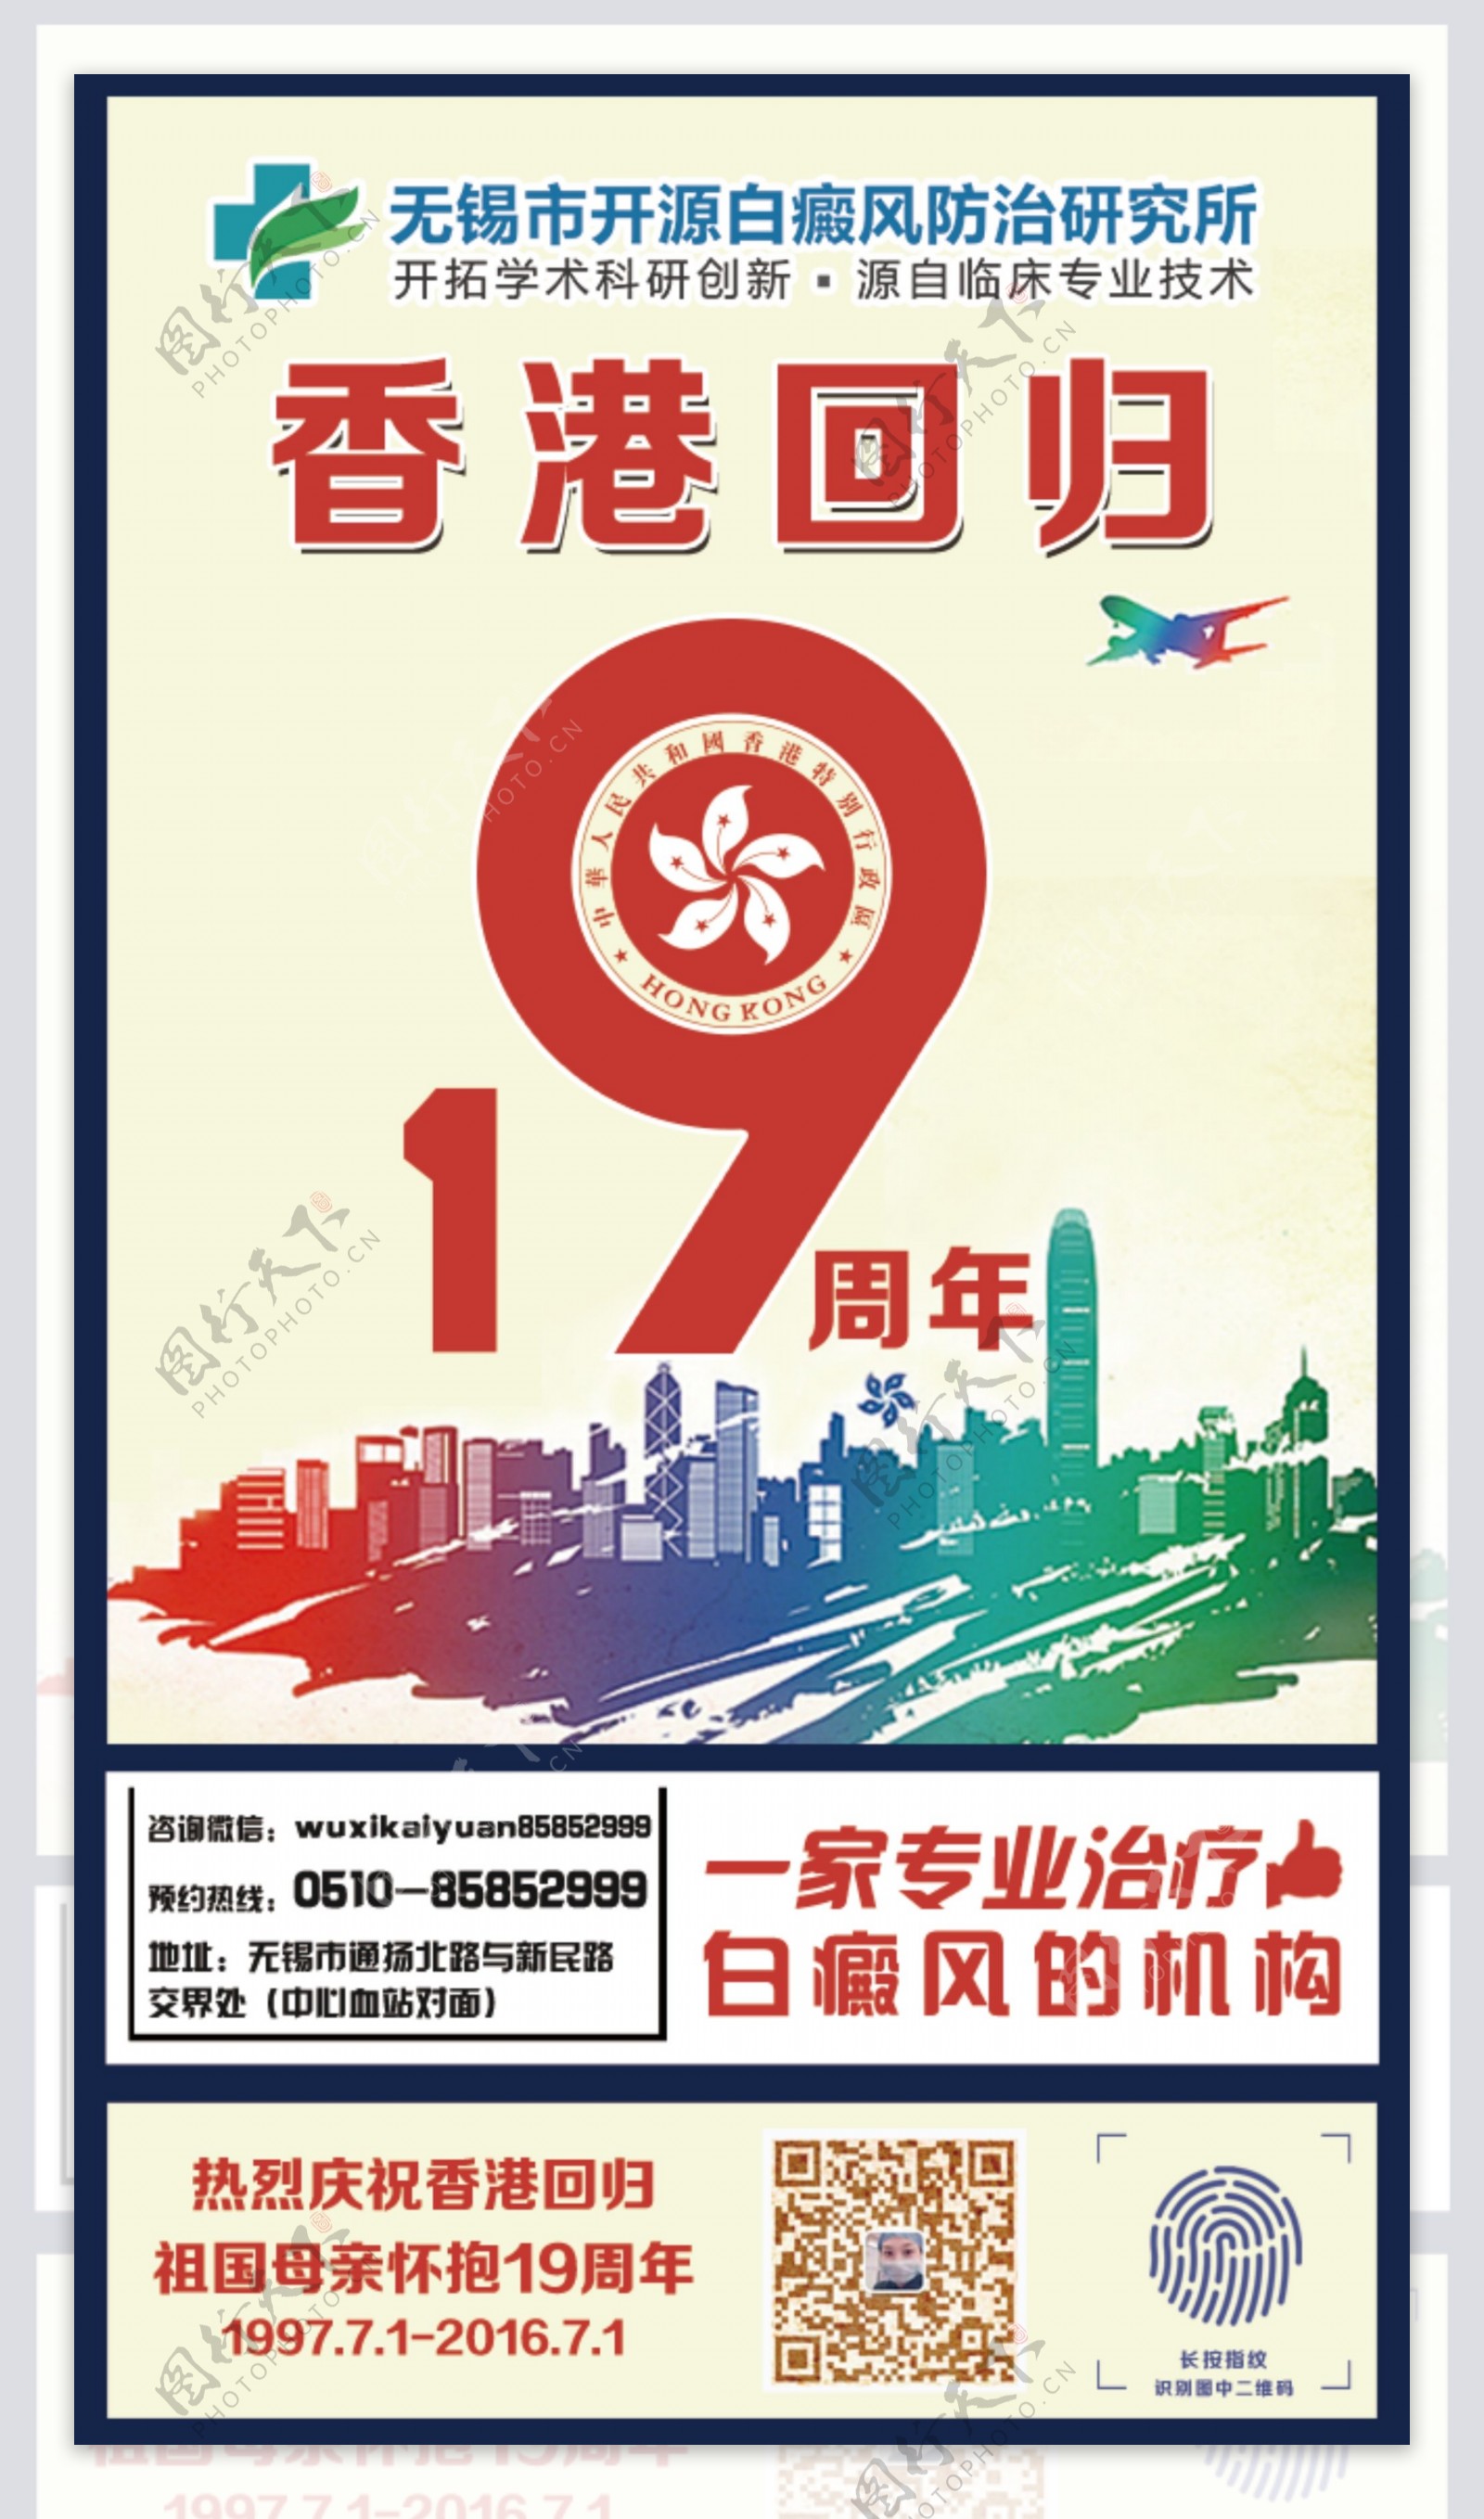 7.1庆祝香港回归19周年纪念日